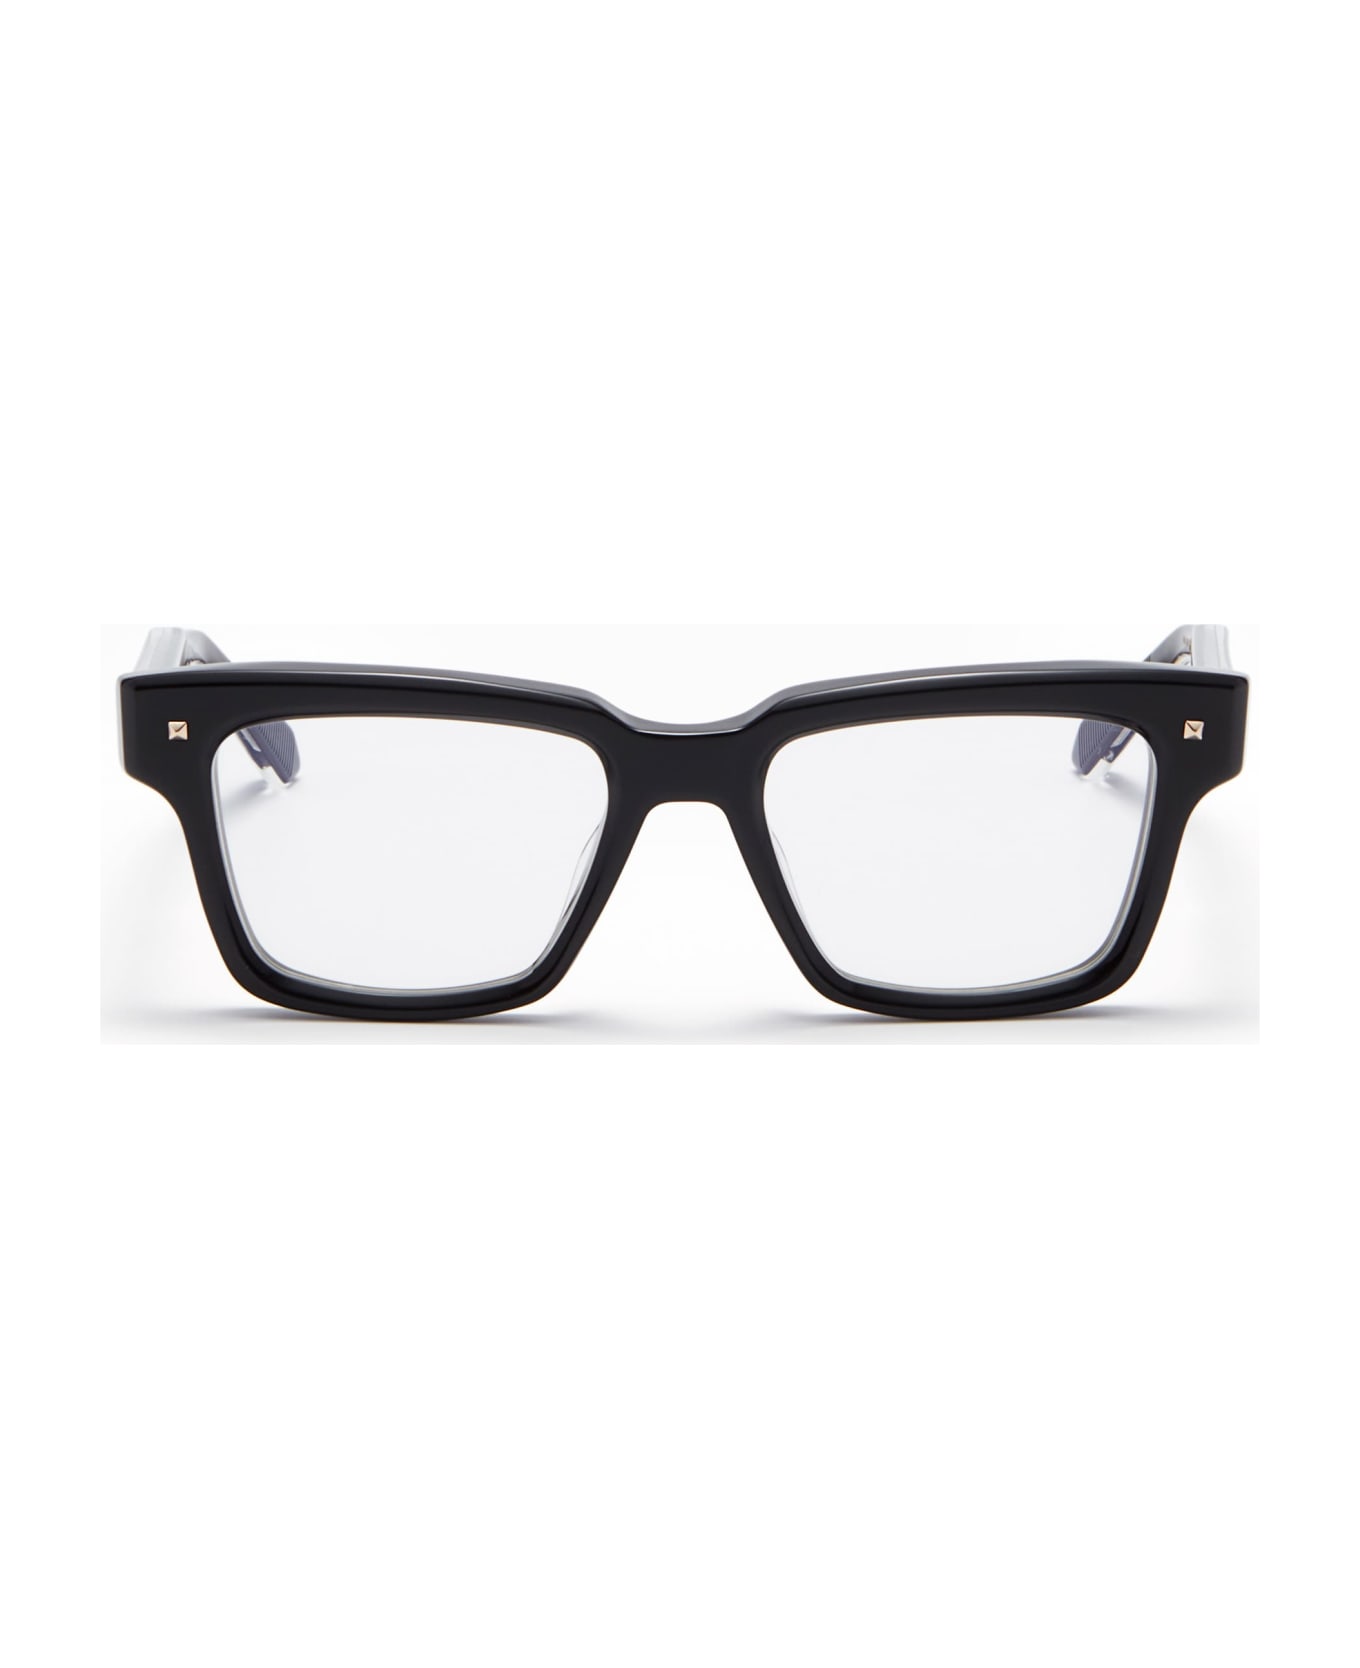 Valentino Eyewear V-essential I - Black Rx Glasses - Black アイウェア